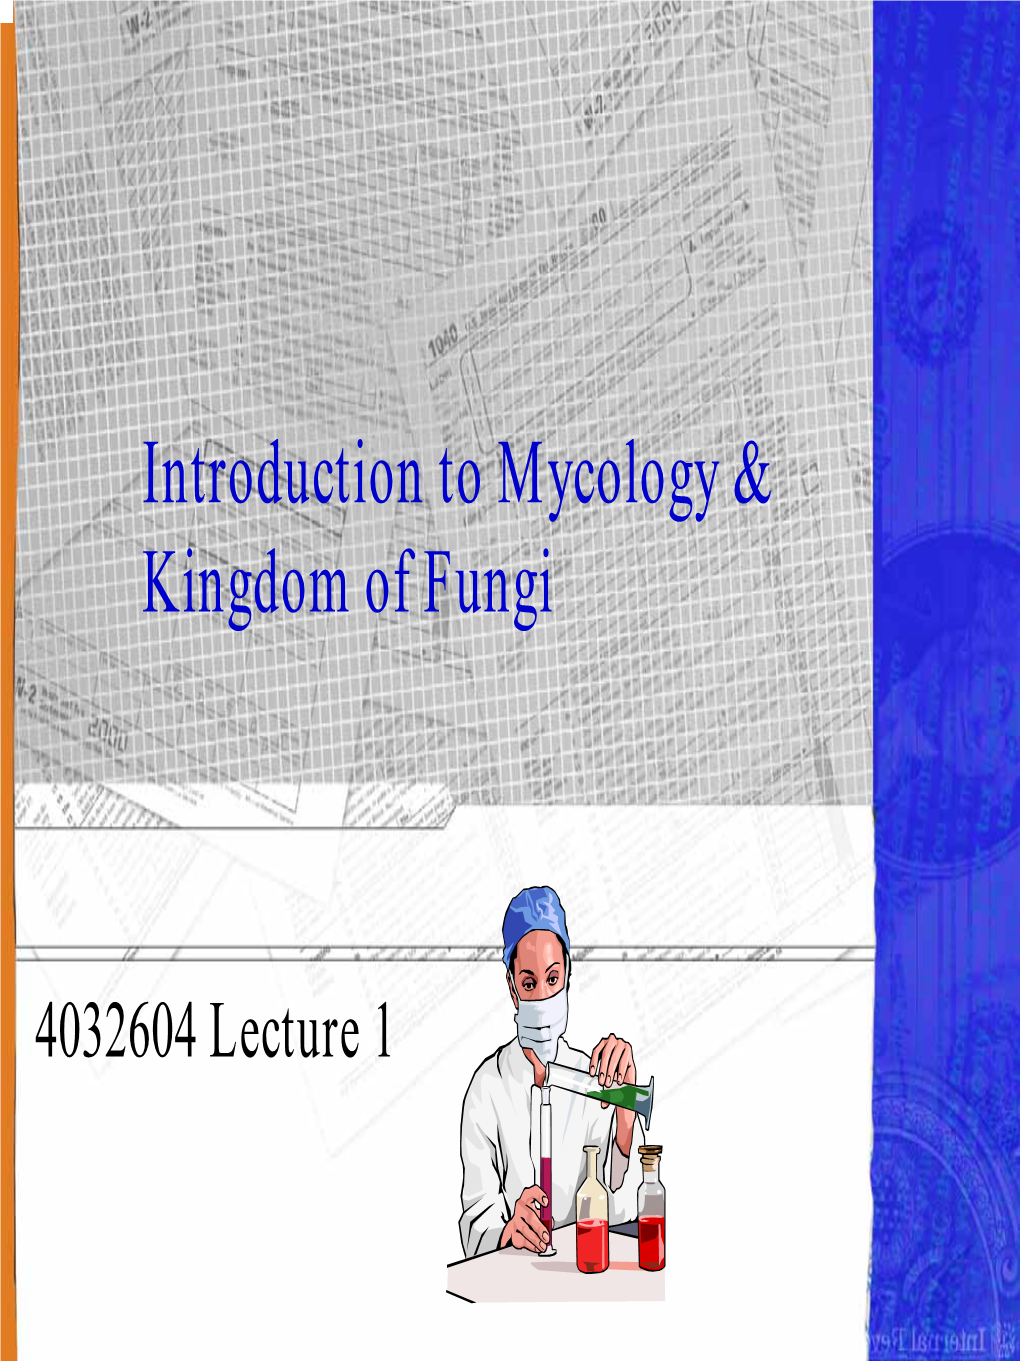 Introduction to Mycology & Kingdom of Fungi